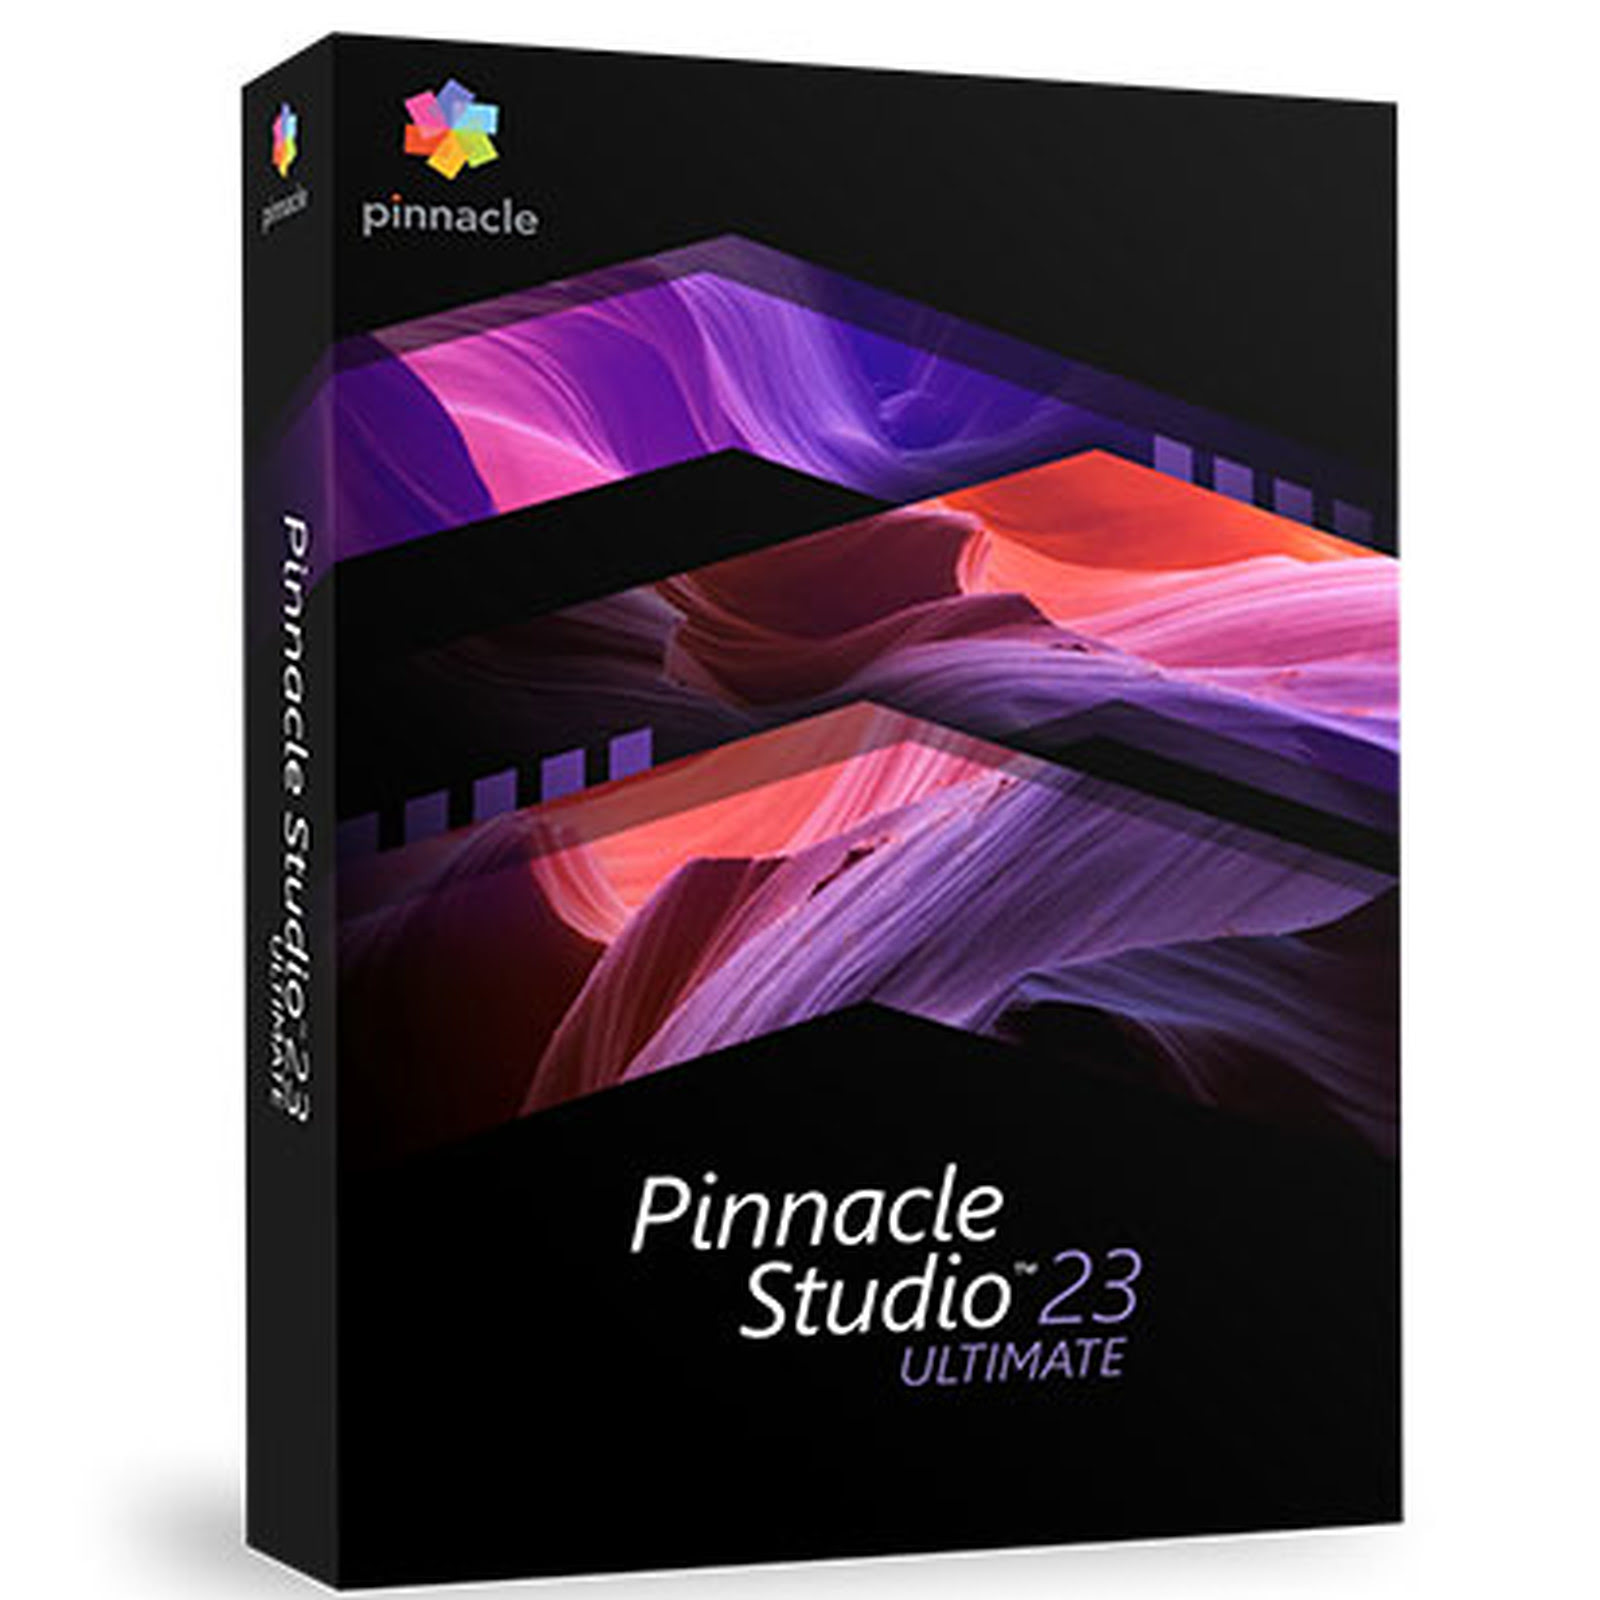 Pinnacle Studio 23 Ultimate - Logiciel application - Cybertek.fr - 0